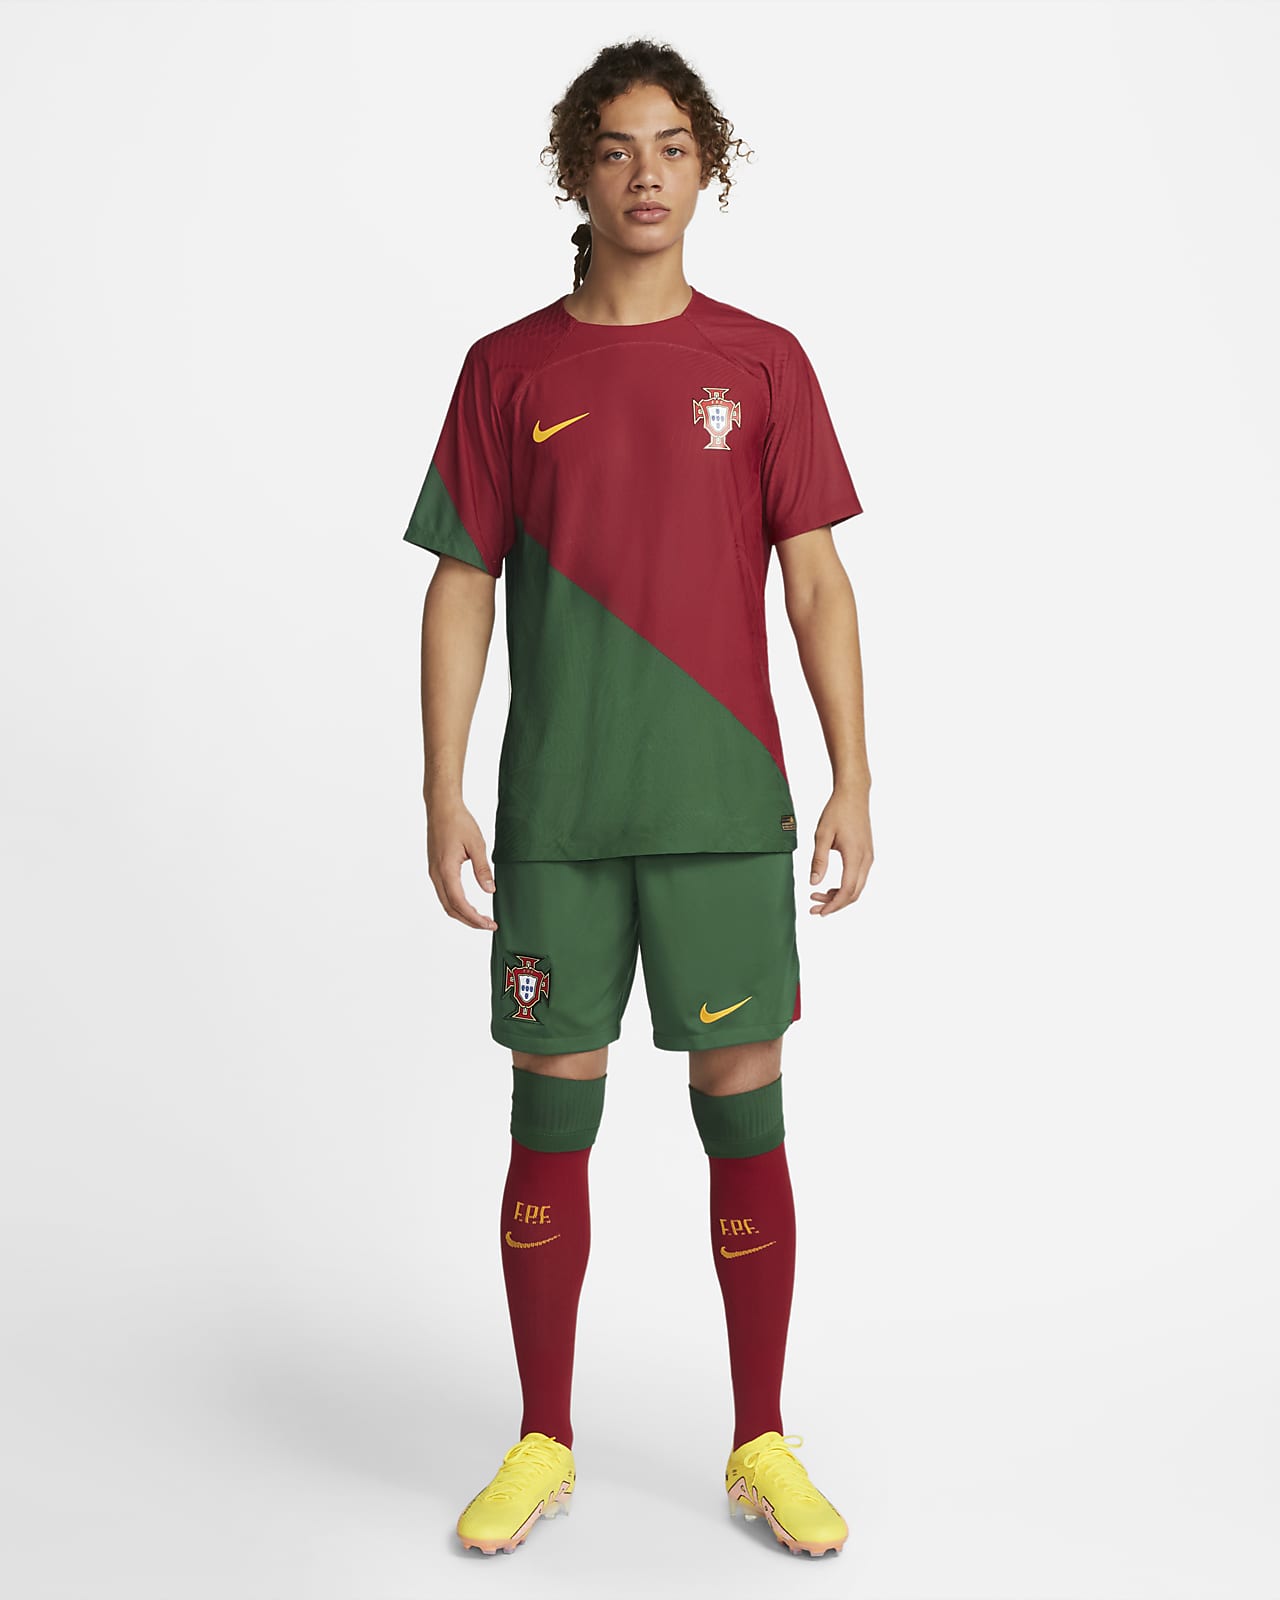 buy portugal football shirt